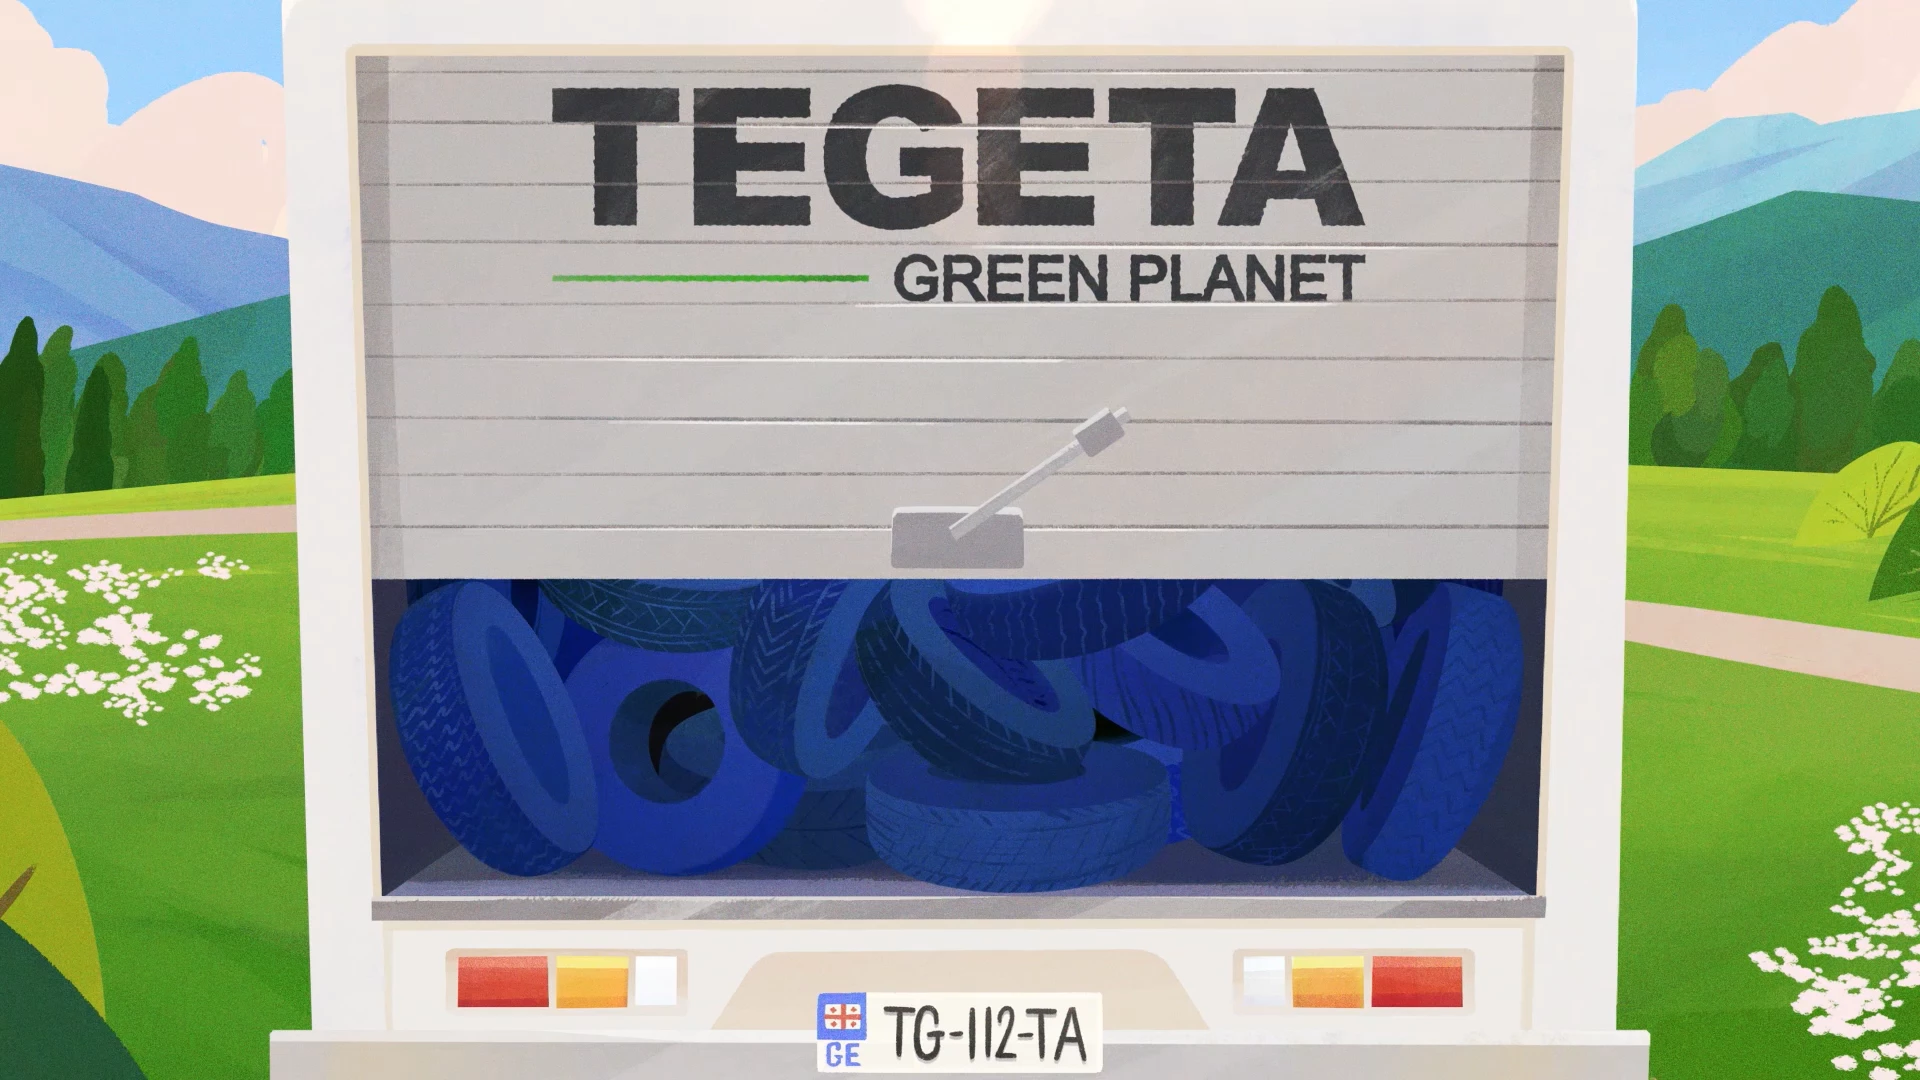 Экологическое видеоролик «Тегета Грин Планет» в филиалах «Тегета»